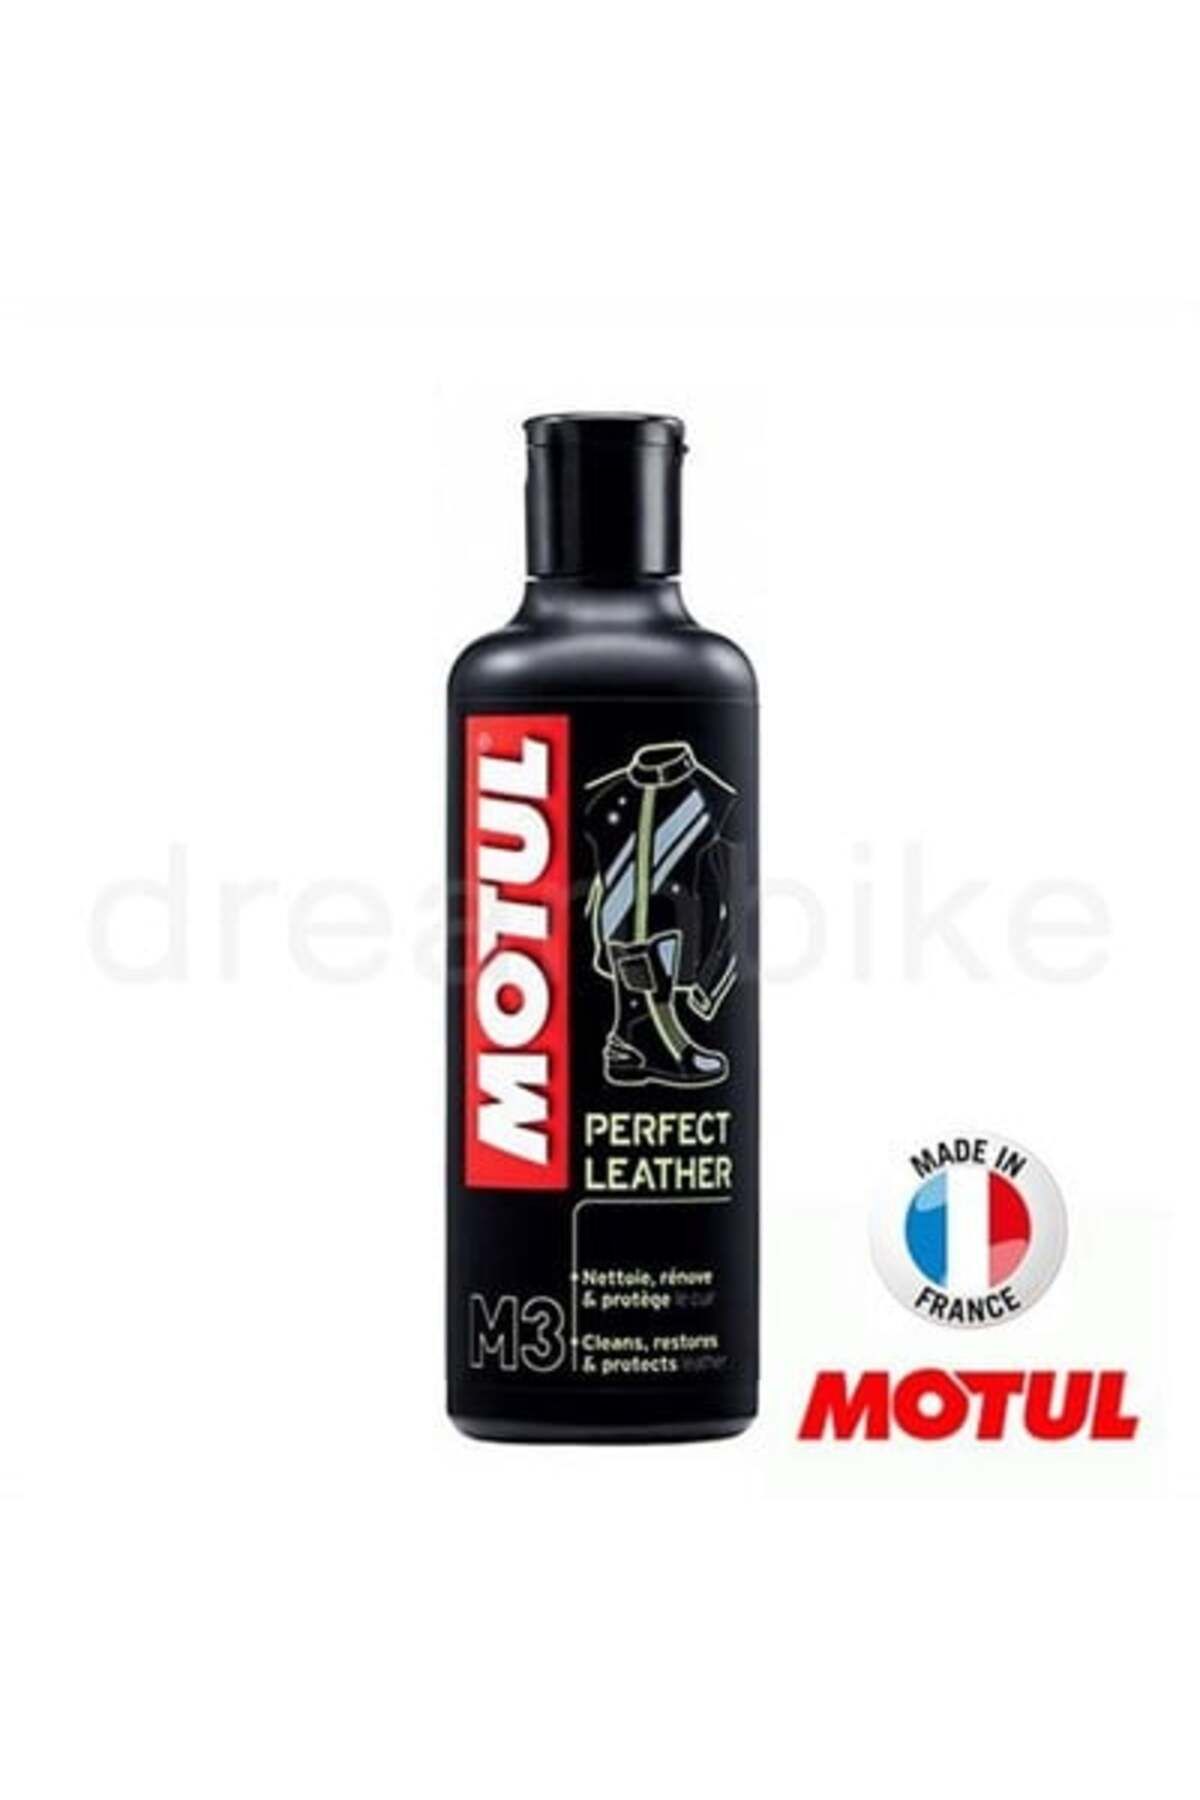 Motul M3 Perfect Leather Deri Temizleyici 250 ml Made In France